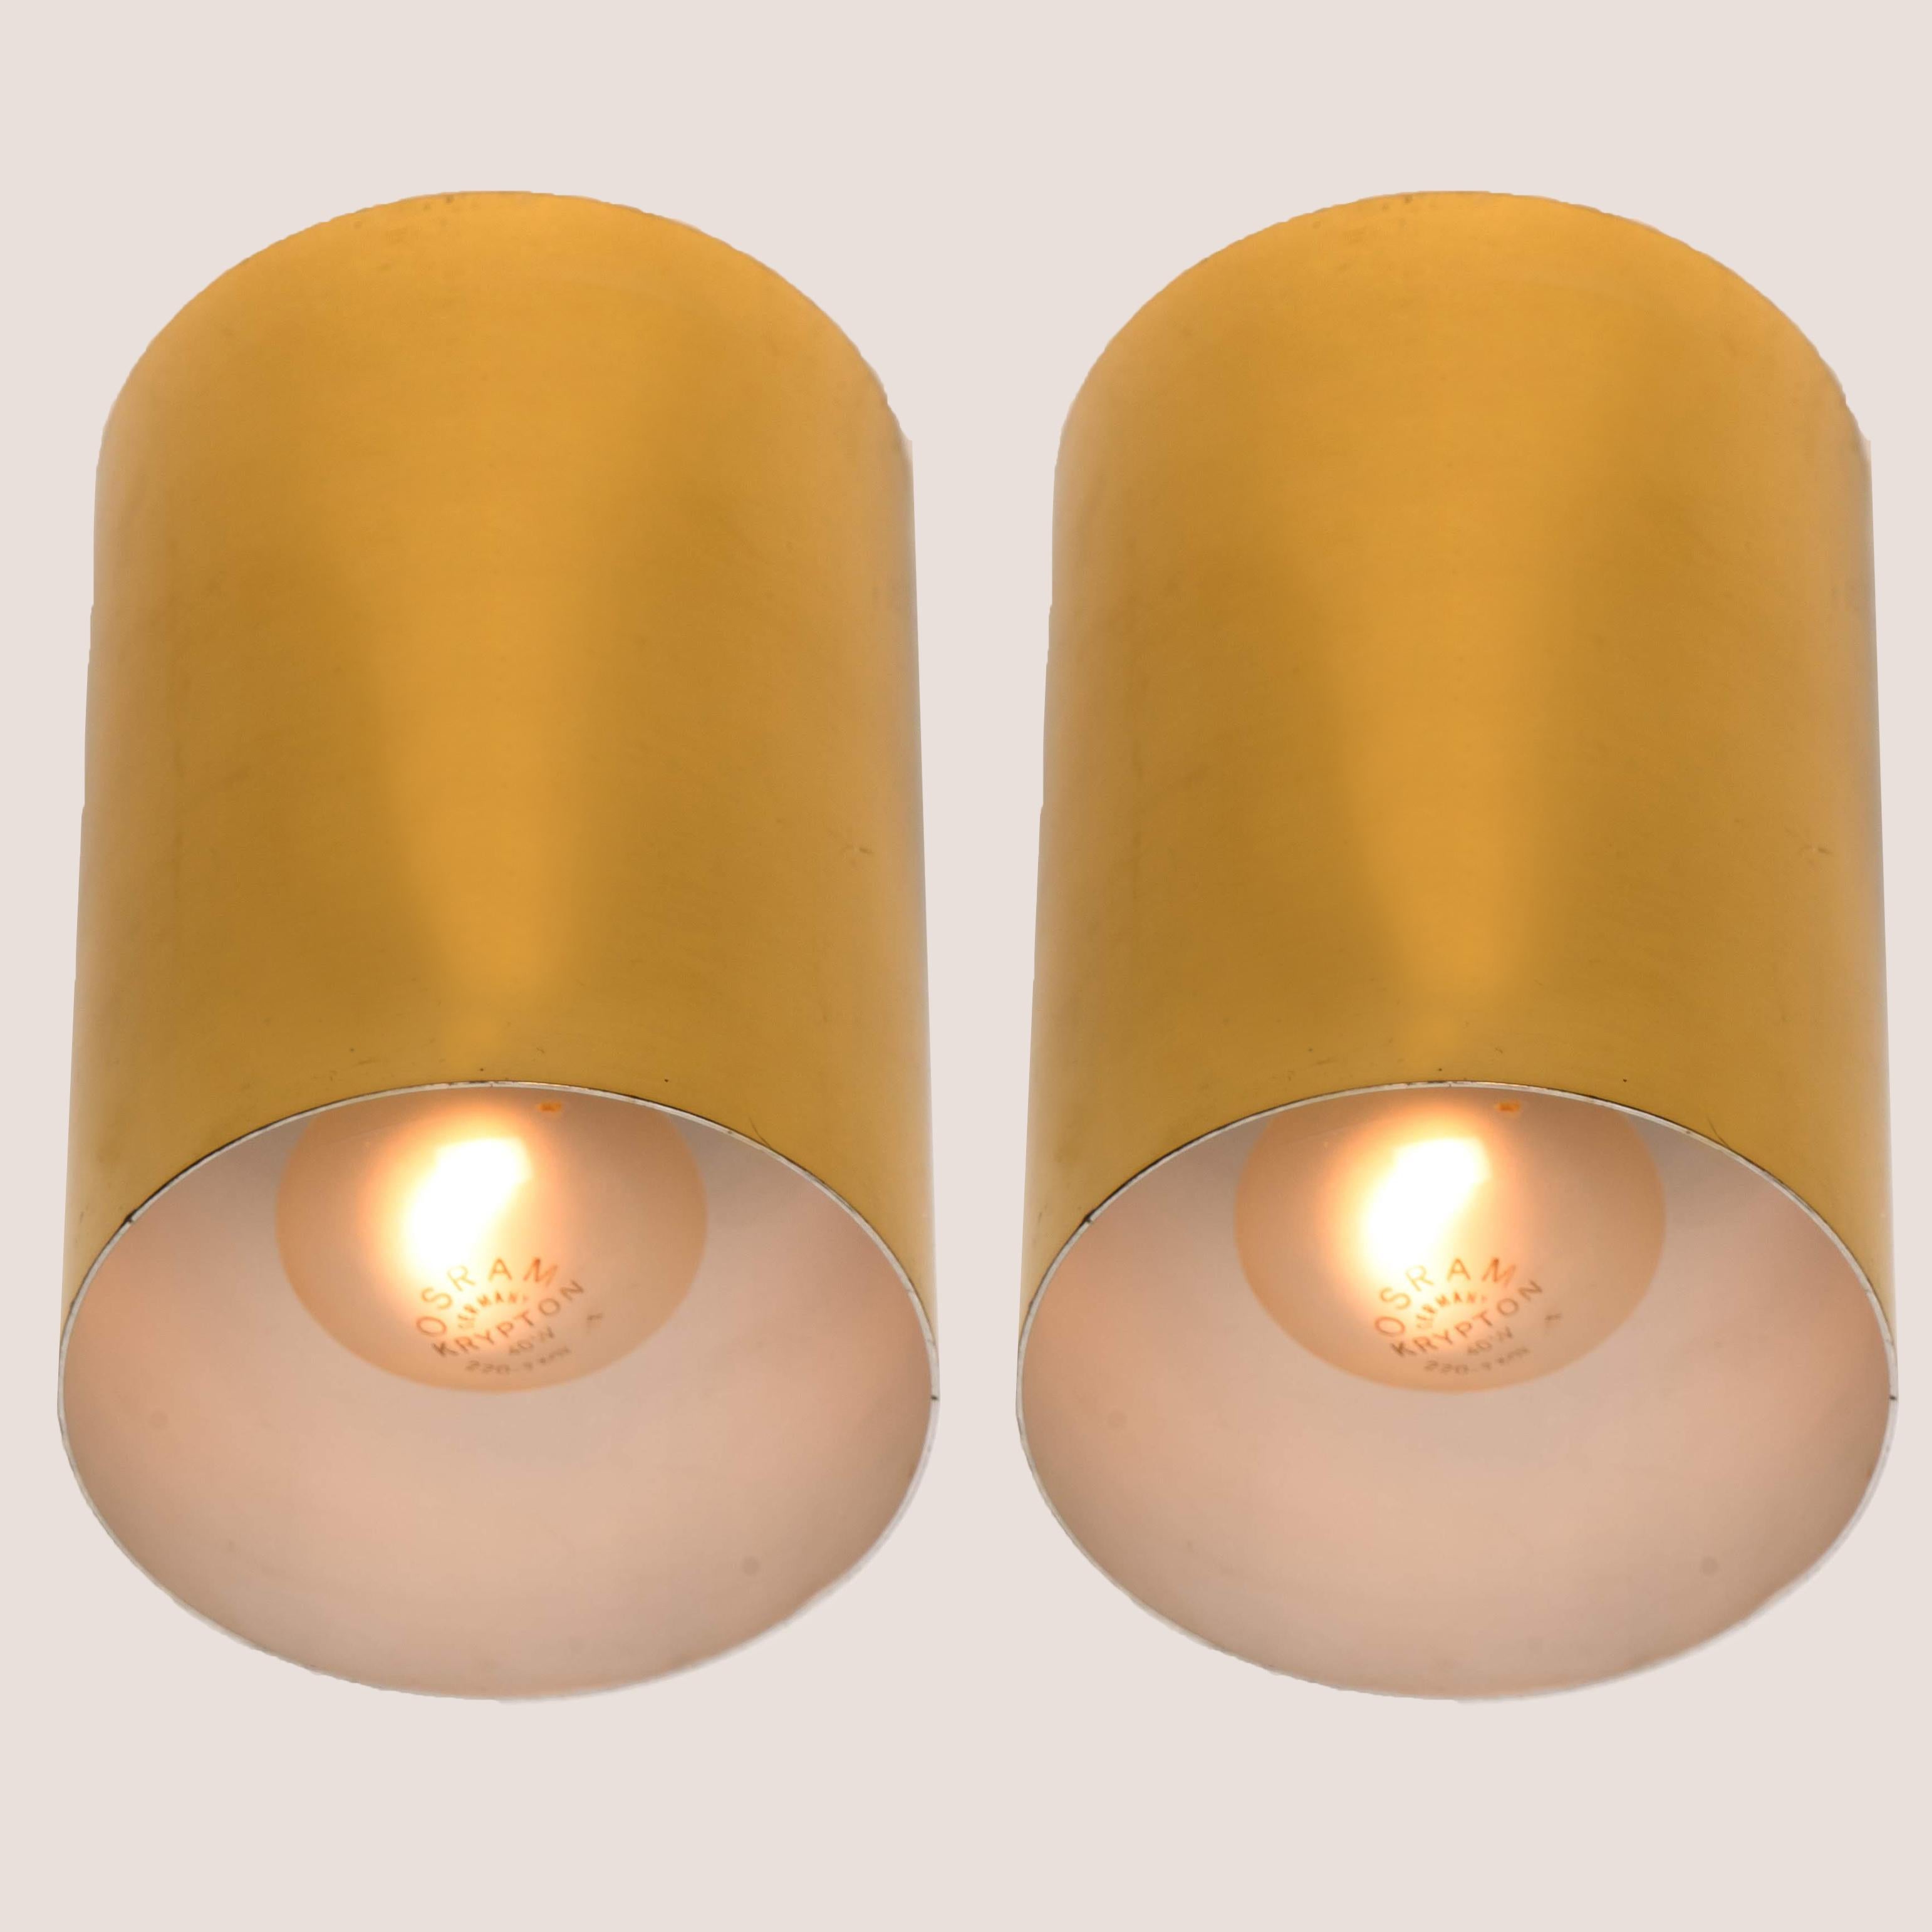 Ein Paar Hillebrand-Würfel-Leuchter im Stil von Nanda Vigo, 1970er Jahre, Italien.
Hochwertiger Messingrahmen in einer eleganten warmen Goldfarbe, 

Das Licht sorgt für einen Hauch von Intimität. Geeignet für Treppenhaus, Küche, Flur oder